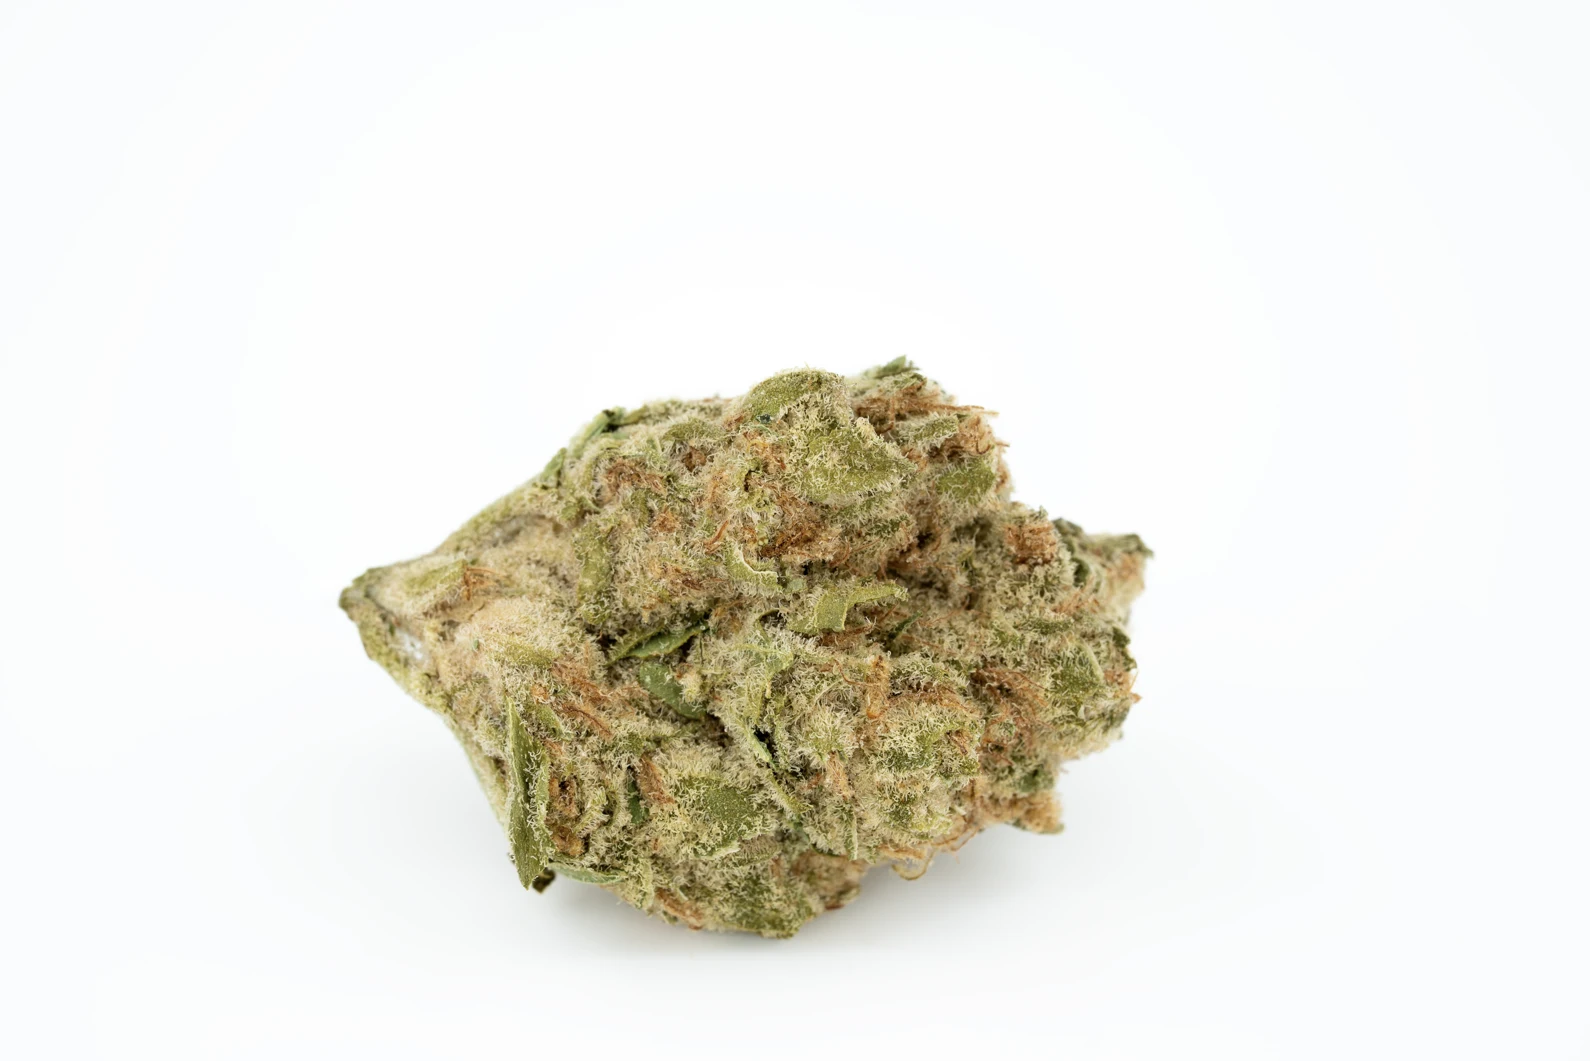 enua-22-1-bcp-ca-cannabisblueten-cannabis-apotheke